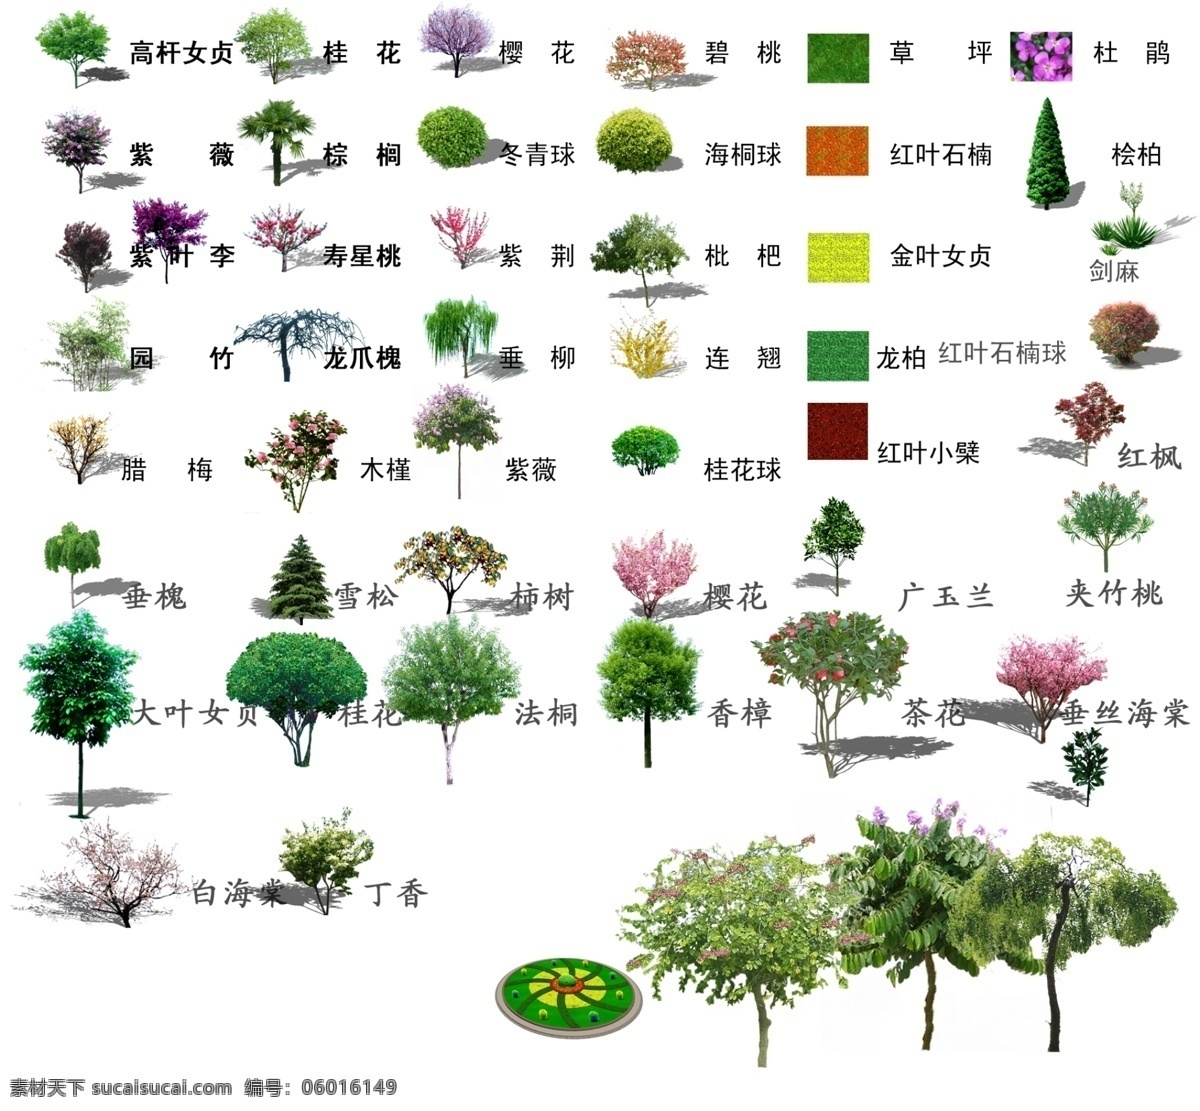 效果图 植物 很多 小 乔木 ps素材 psd分层 效果图后期 小乔木素材 植物素材 3d设计 3d作品